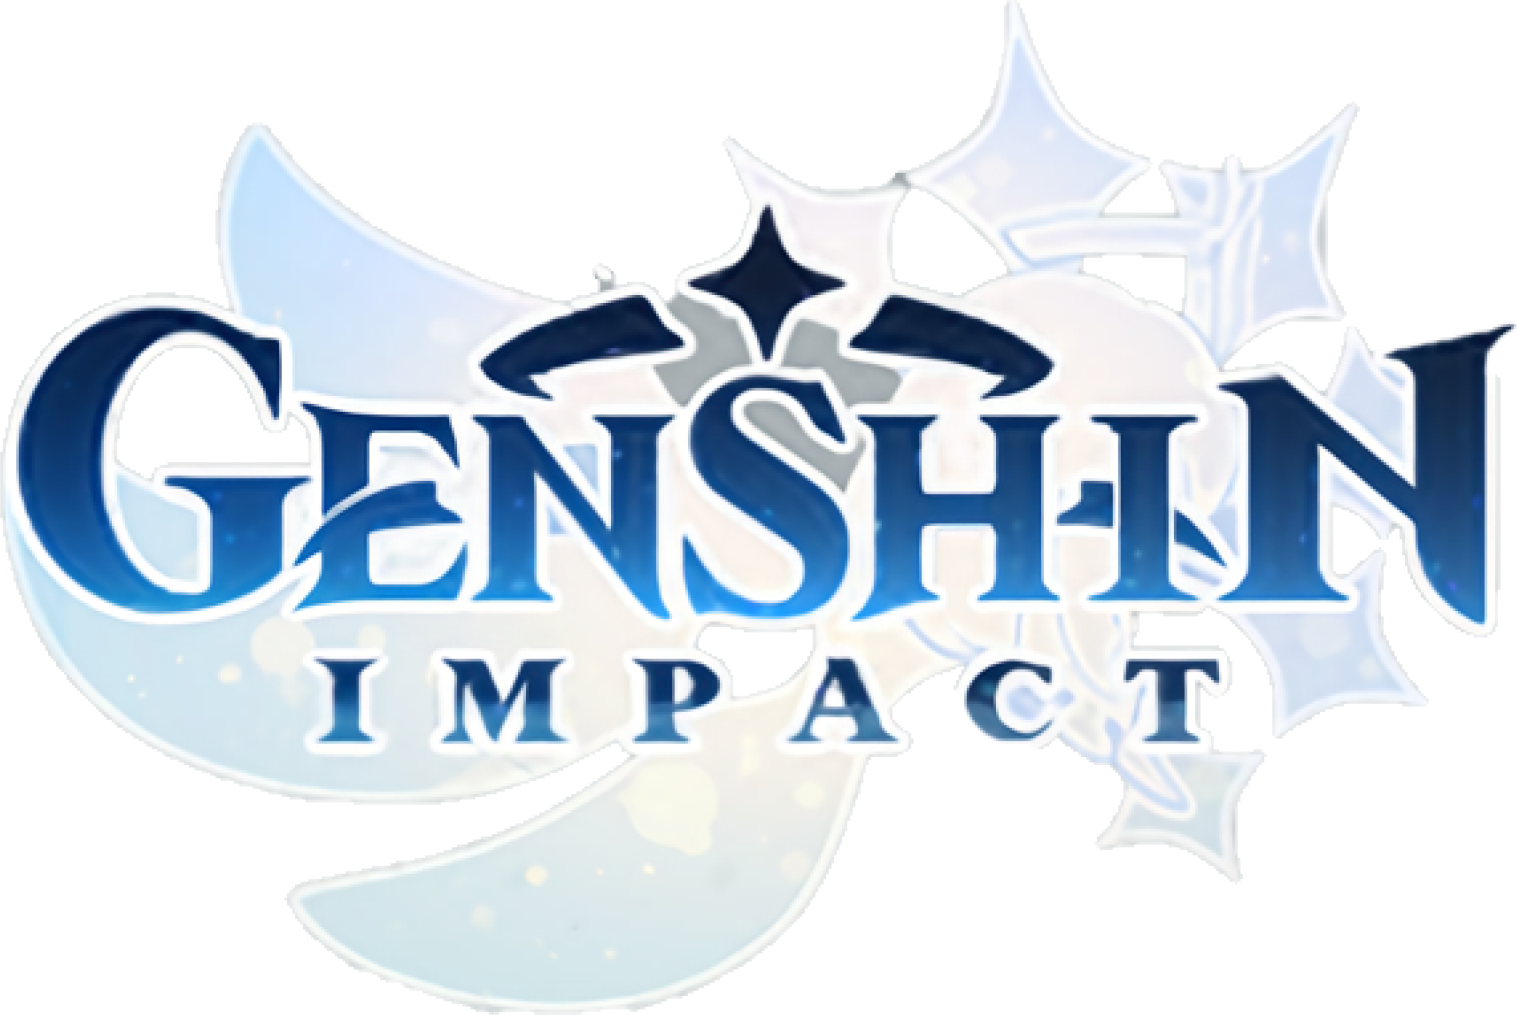 Геншин Импакт лого. Логотип Геншин импаксэт. Геншин игра лого. Логотип игры Genshin Impact.